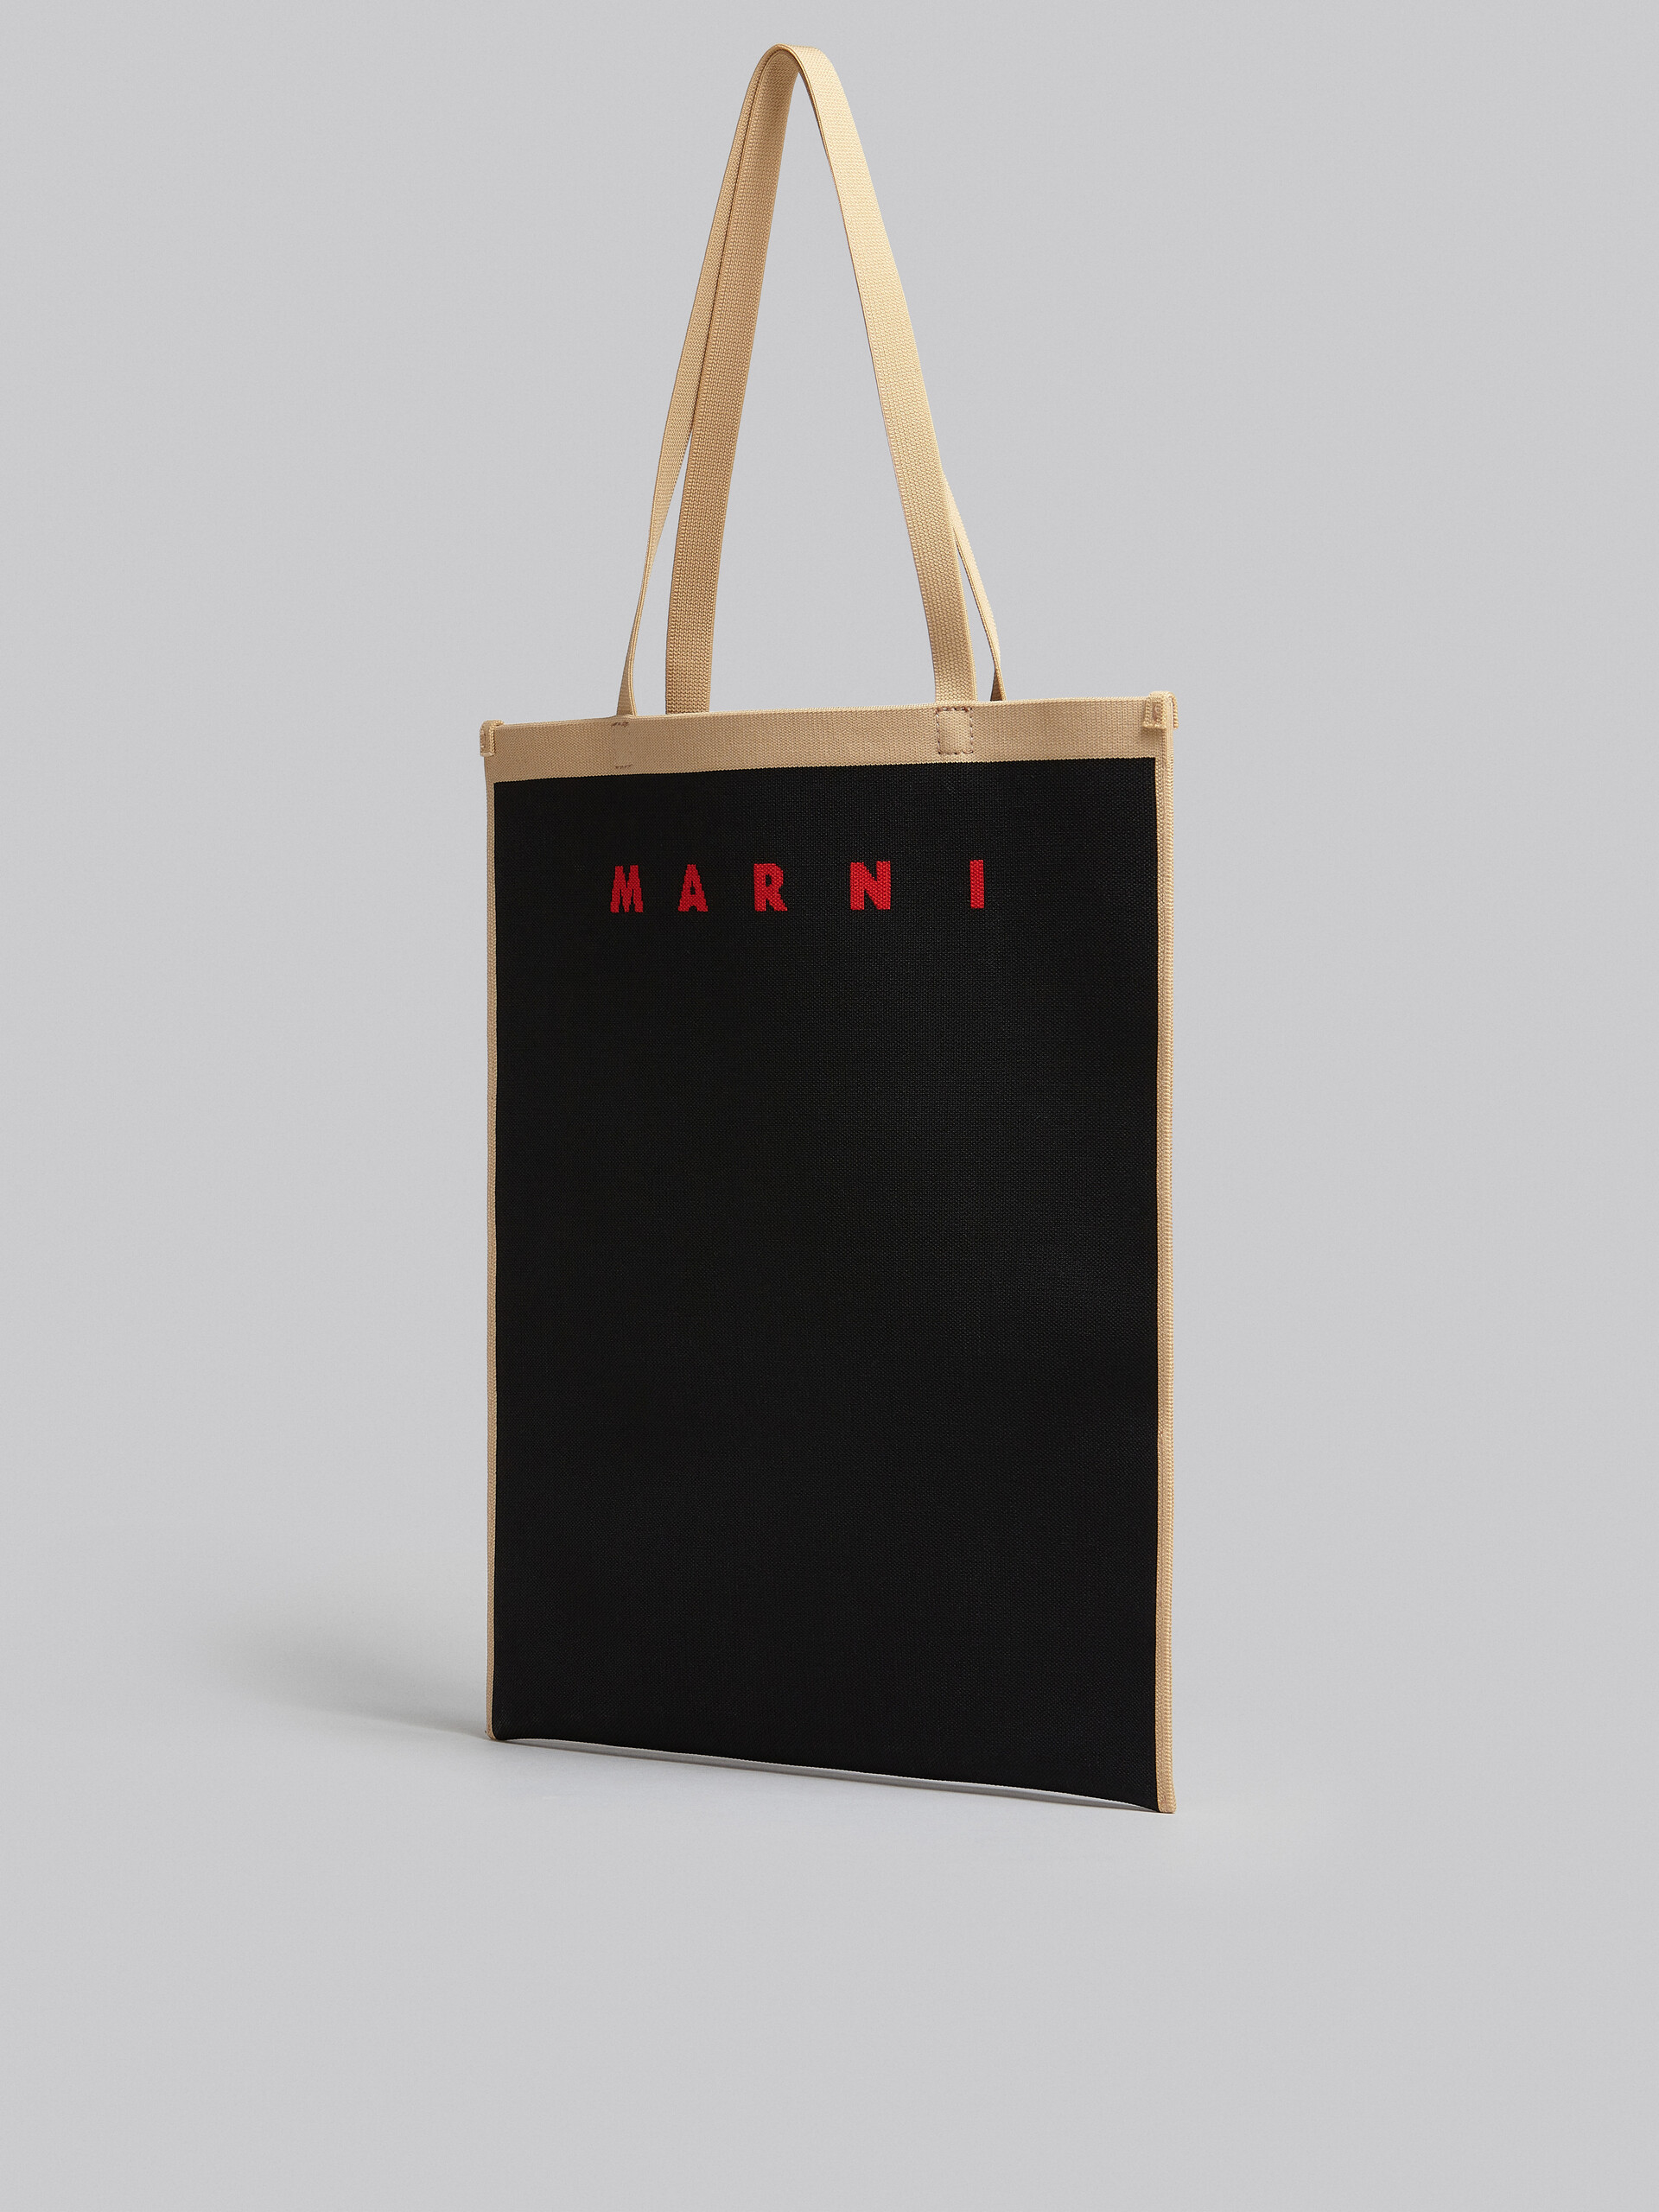 Tasche aus Jacquard in Schwarz und Beige - Shopper - Image 3